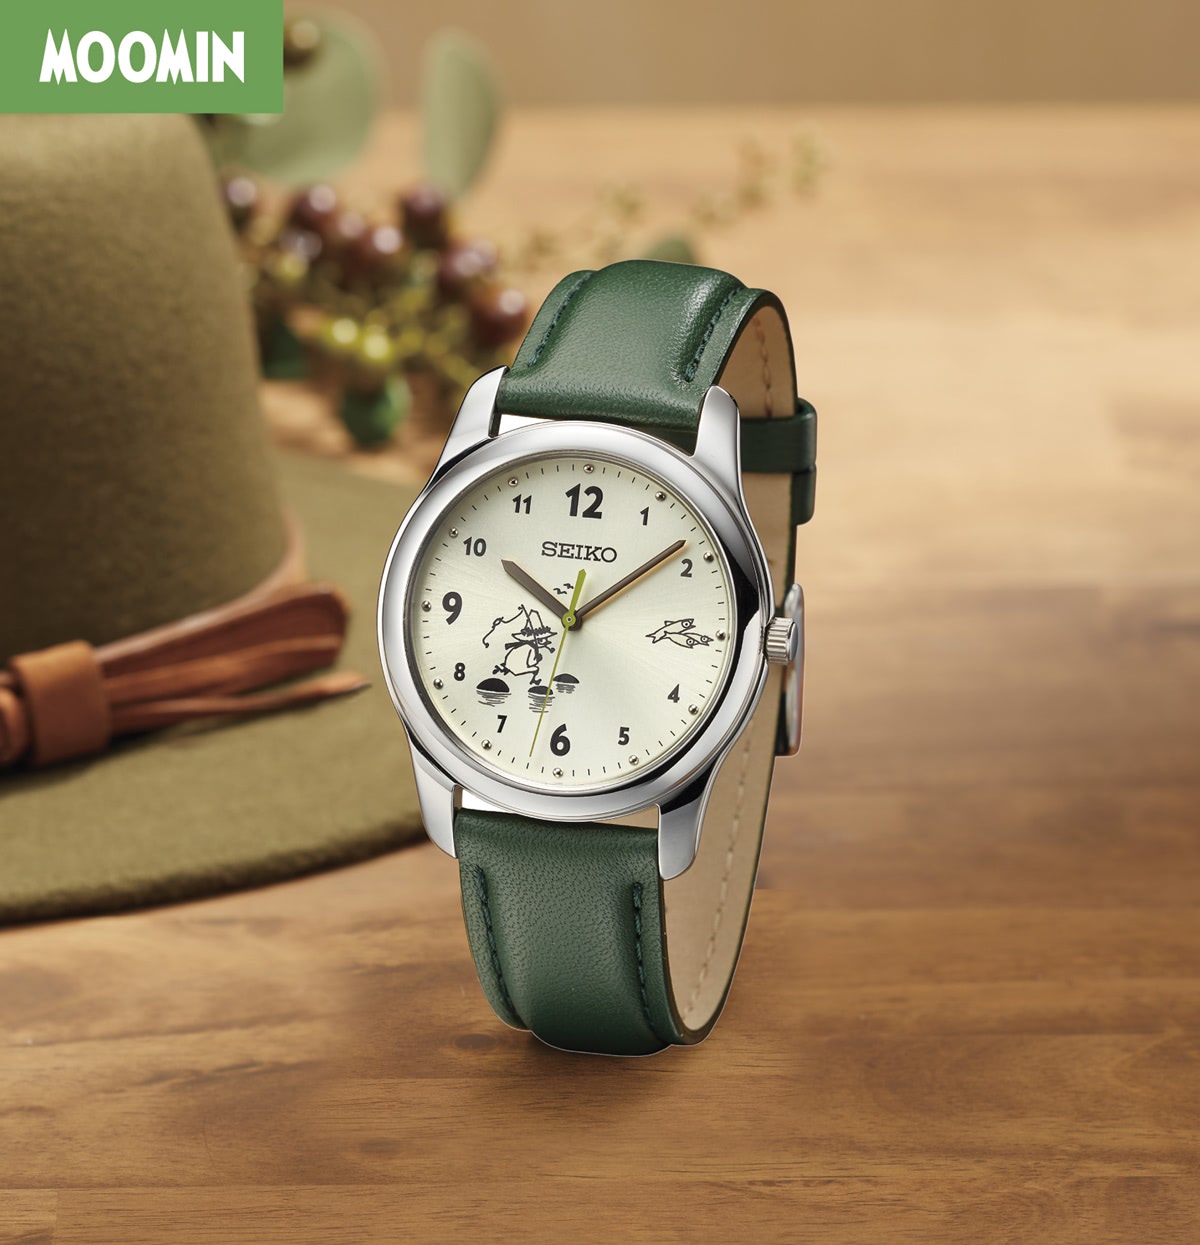 ムーミン】スナフキンの豊かな時間を共有できるスペシャルな腕時計 